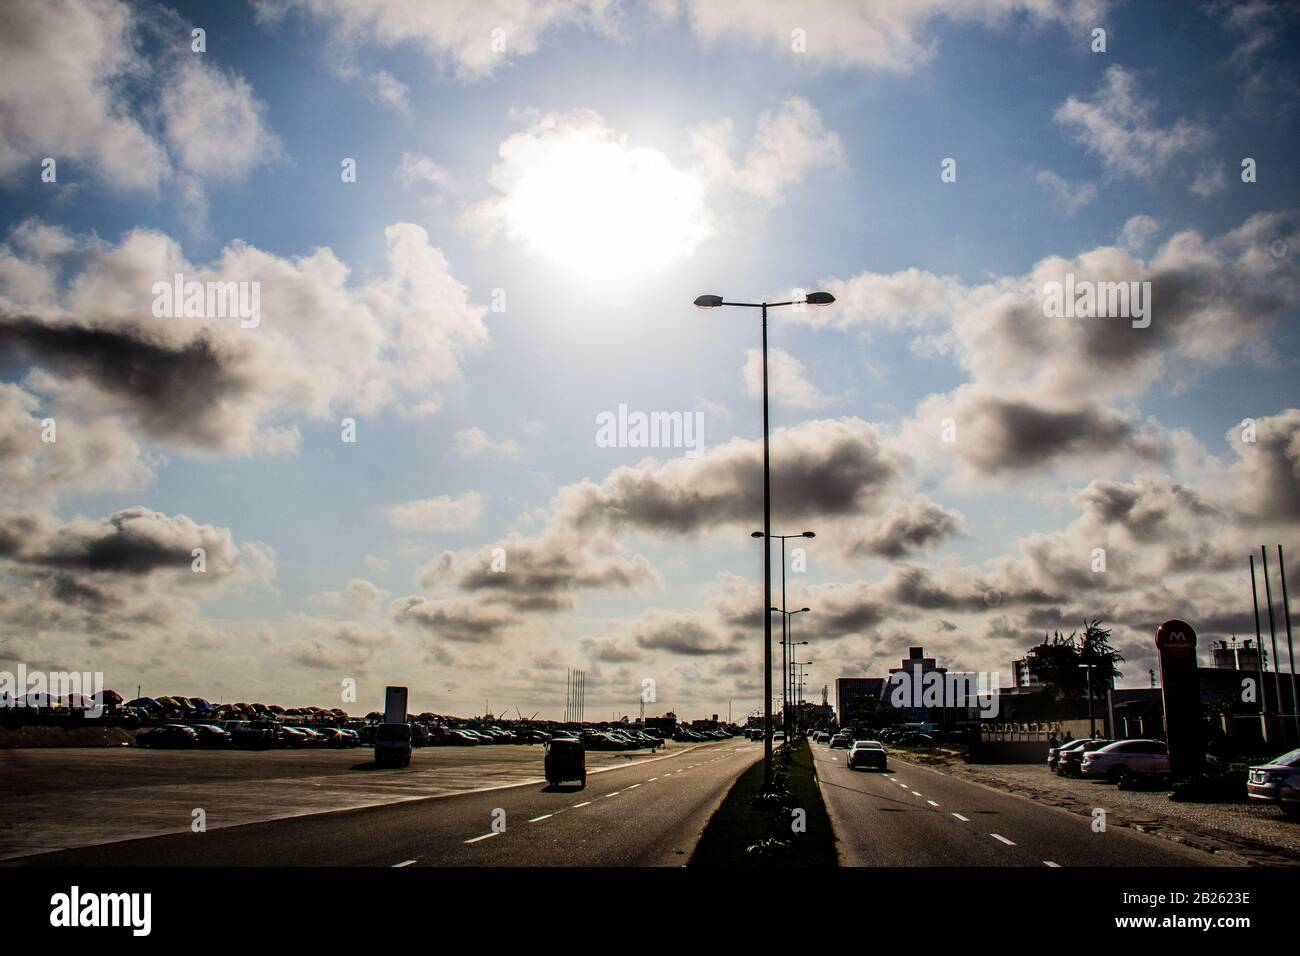 Bâtiments, voitures et réverbères contre le ciel étoilé dans une rue de Lagos, au Nigeria. Banque D'Images